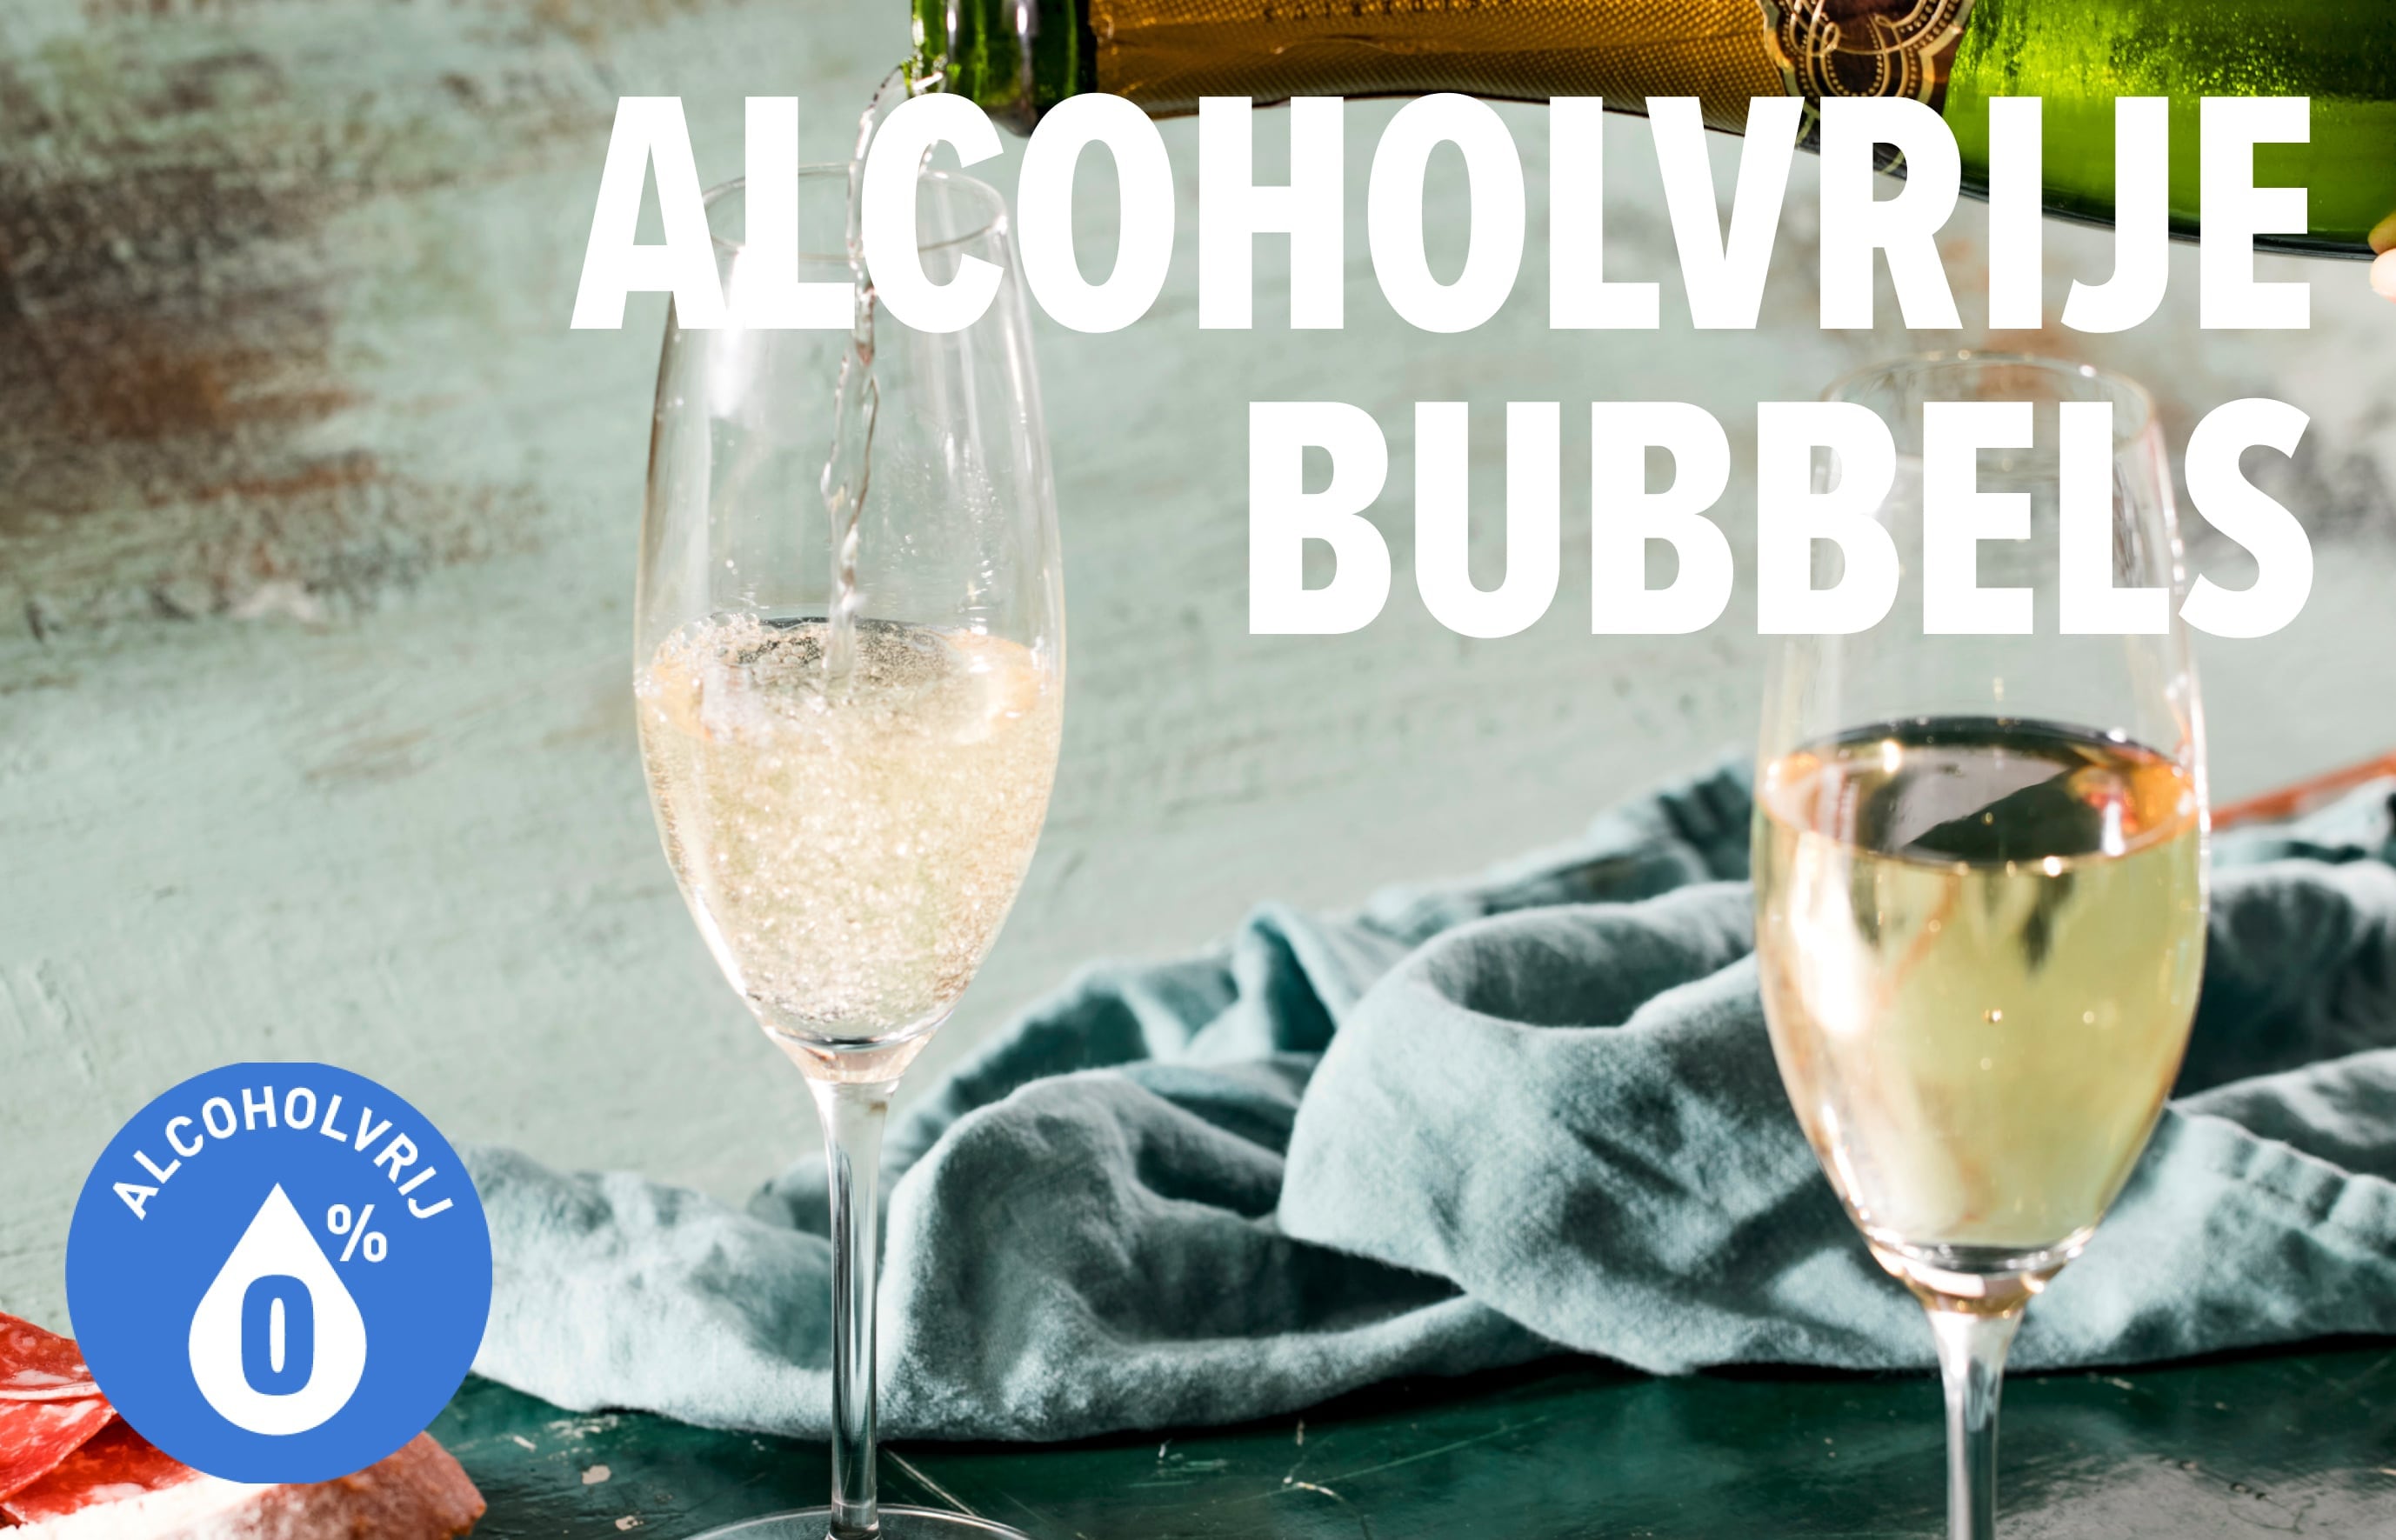 ontdek/bubbels/alcoholvrije-bubbels-landing